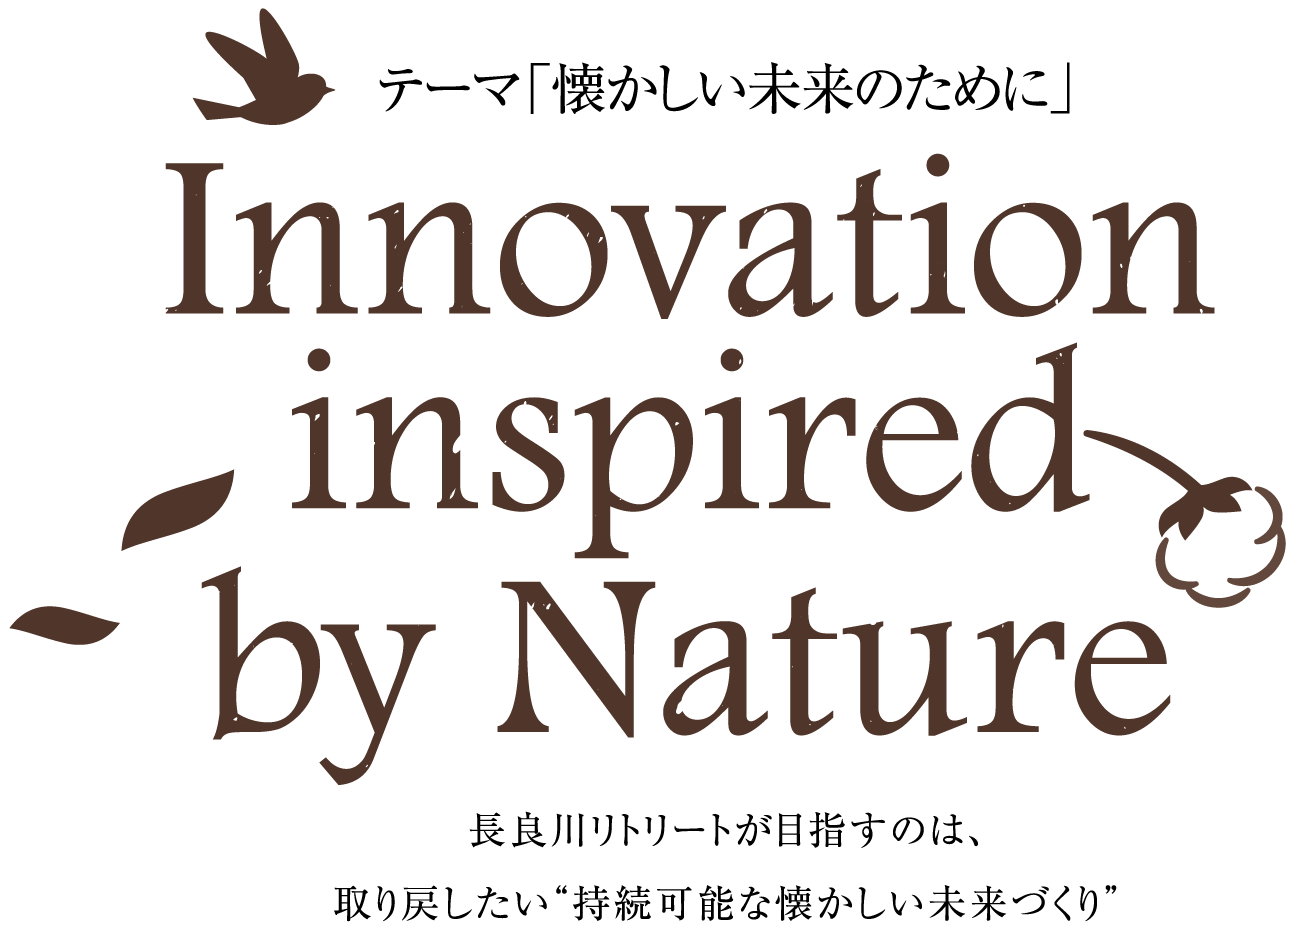 テーマ「懐かしい未来のために」　Innovation inspired by Nature　長良川リトリートが目指すのは、取り戻したい“持続可能な懐かしい未来づくり”